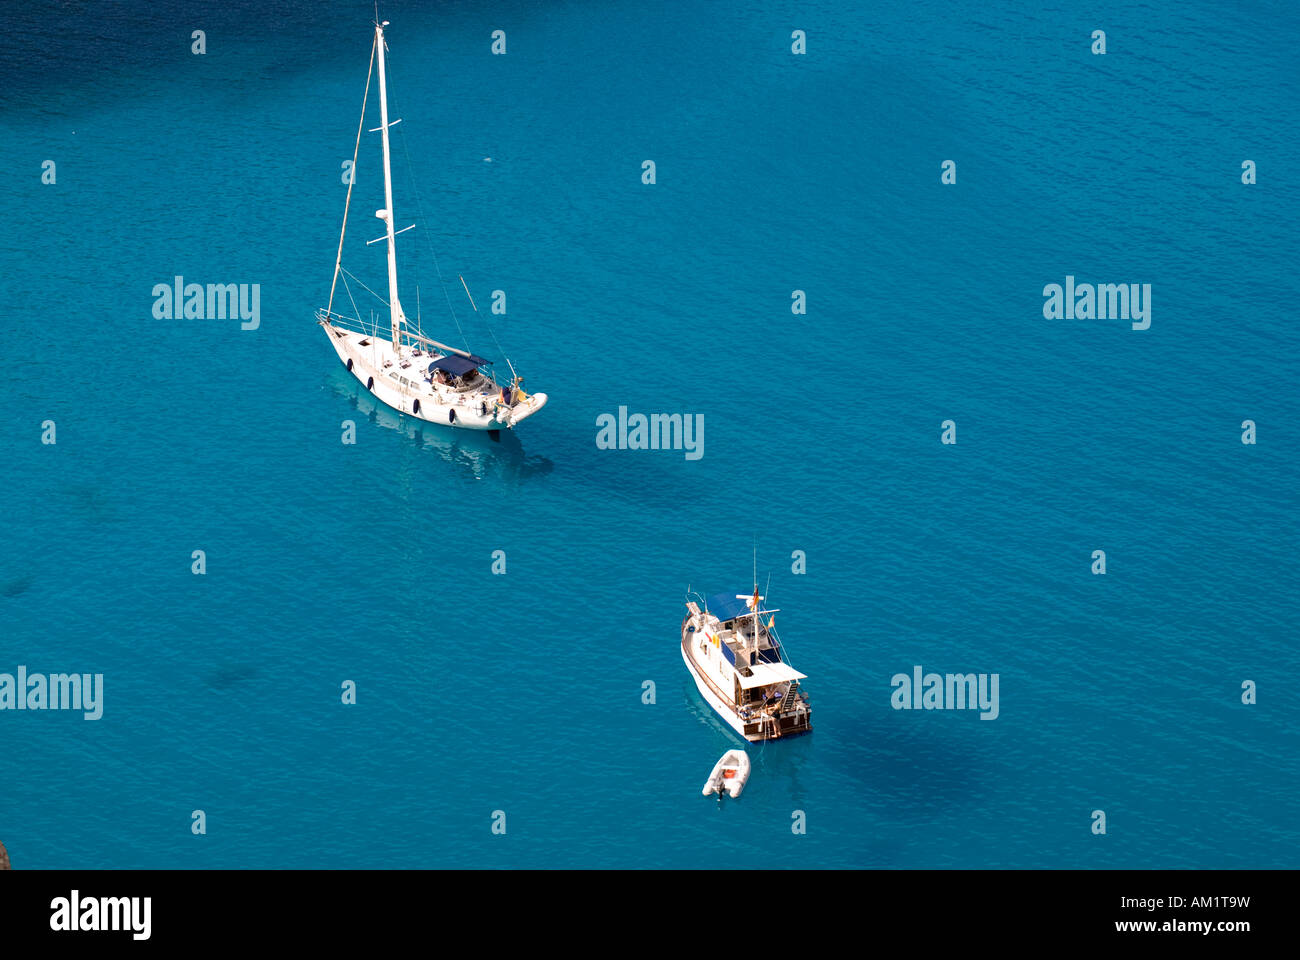 Sailboats in a bay, Mallorca, Balearic Islands, Spain Stock Photo